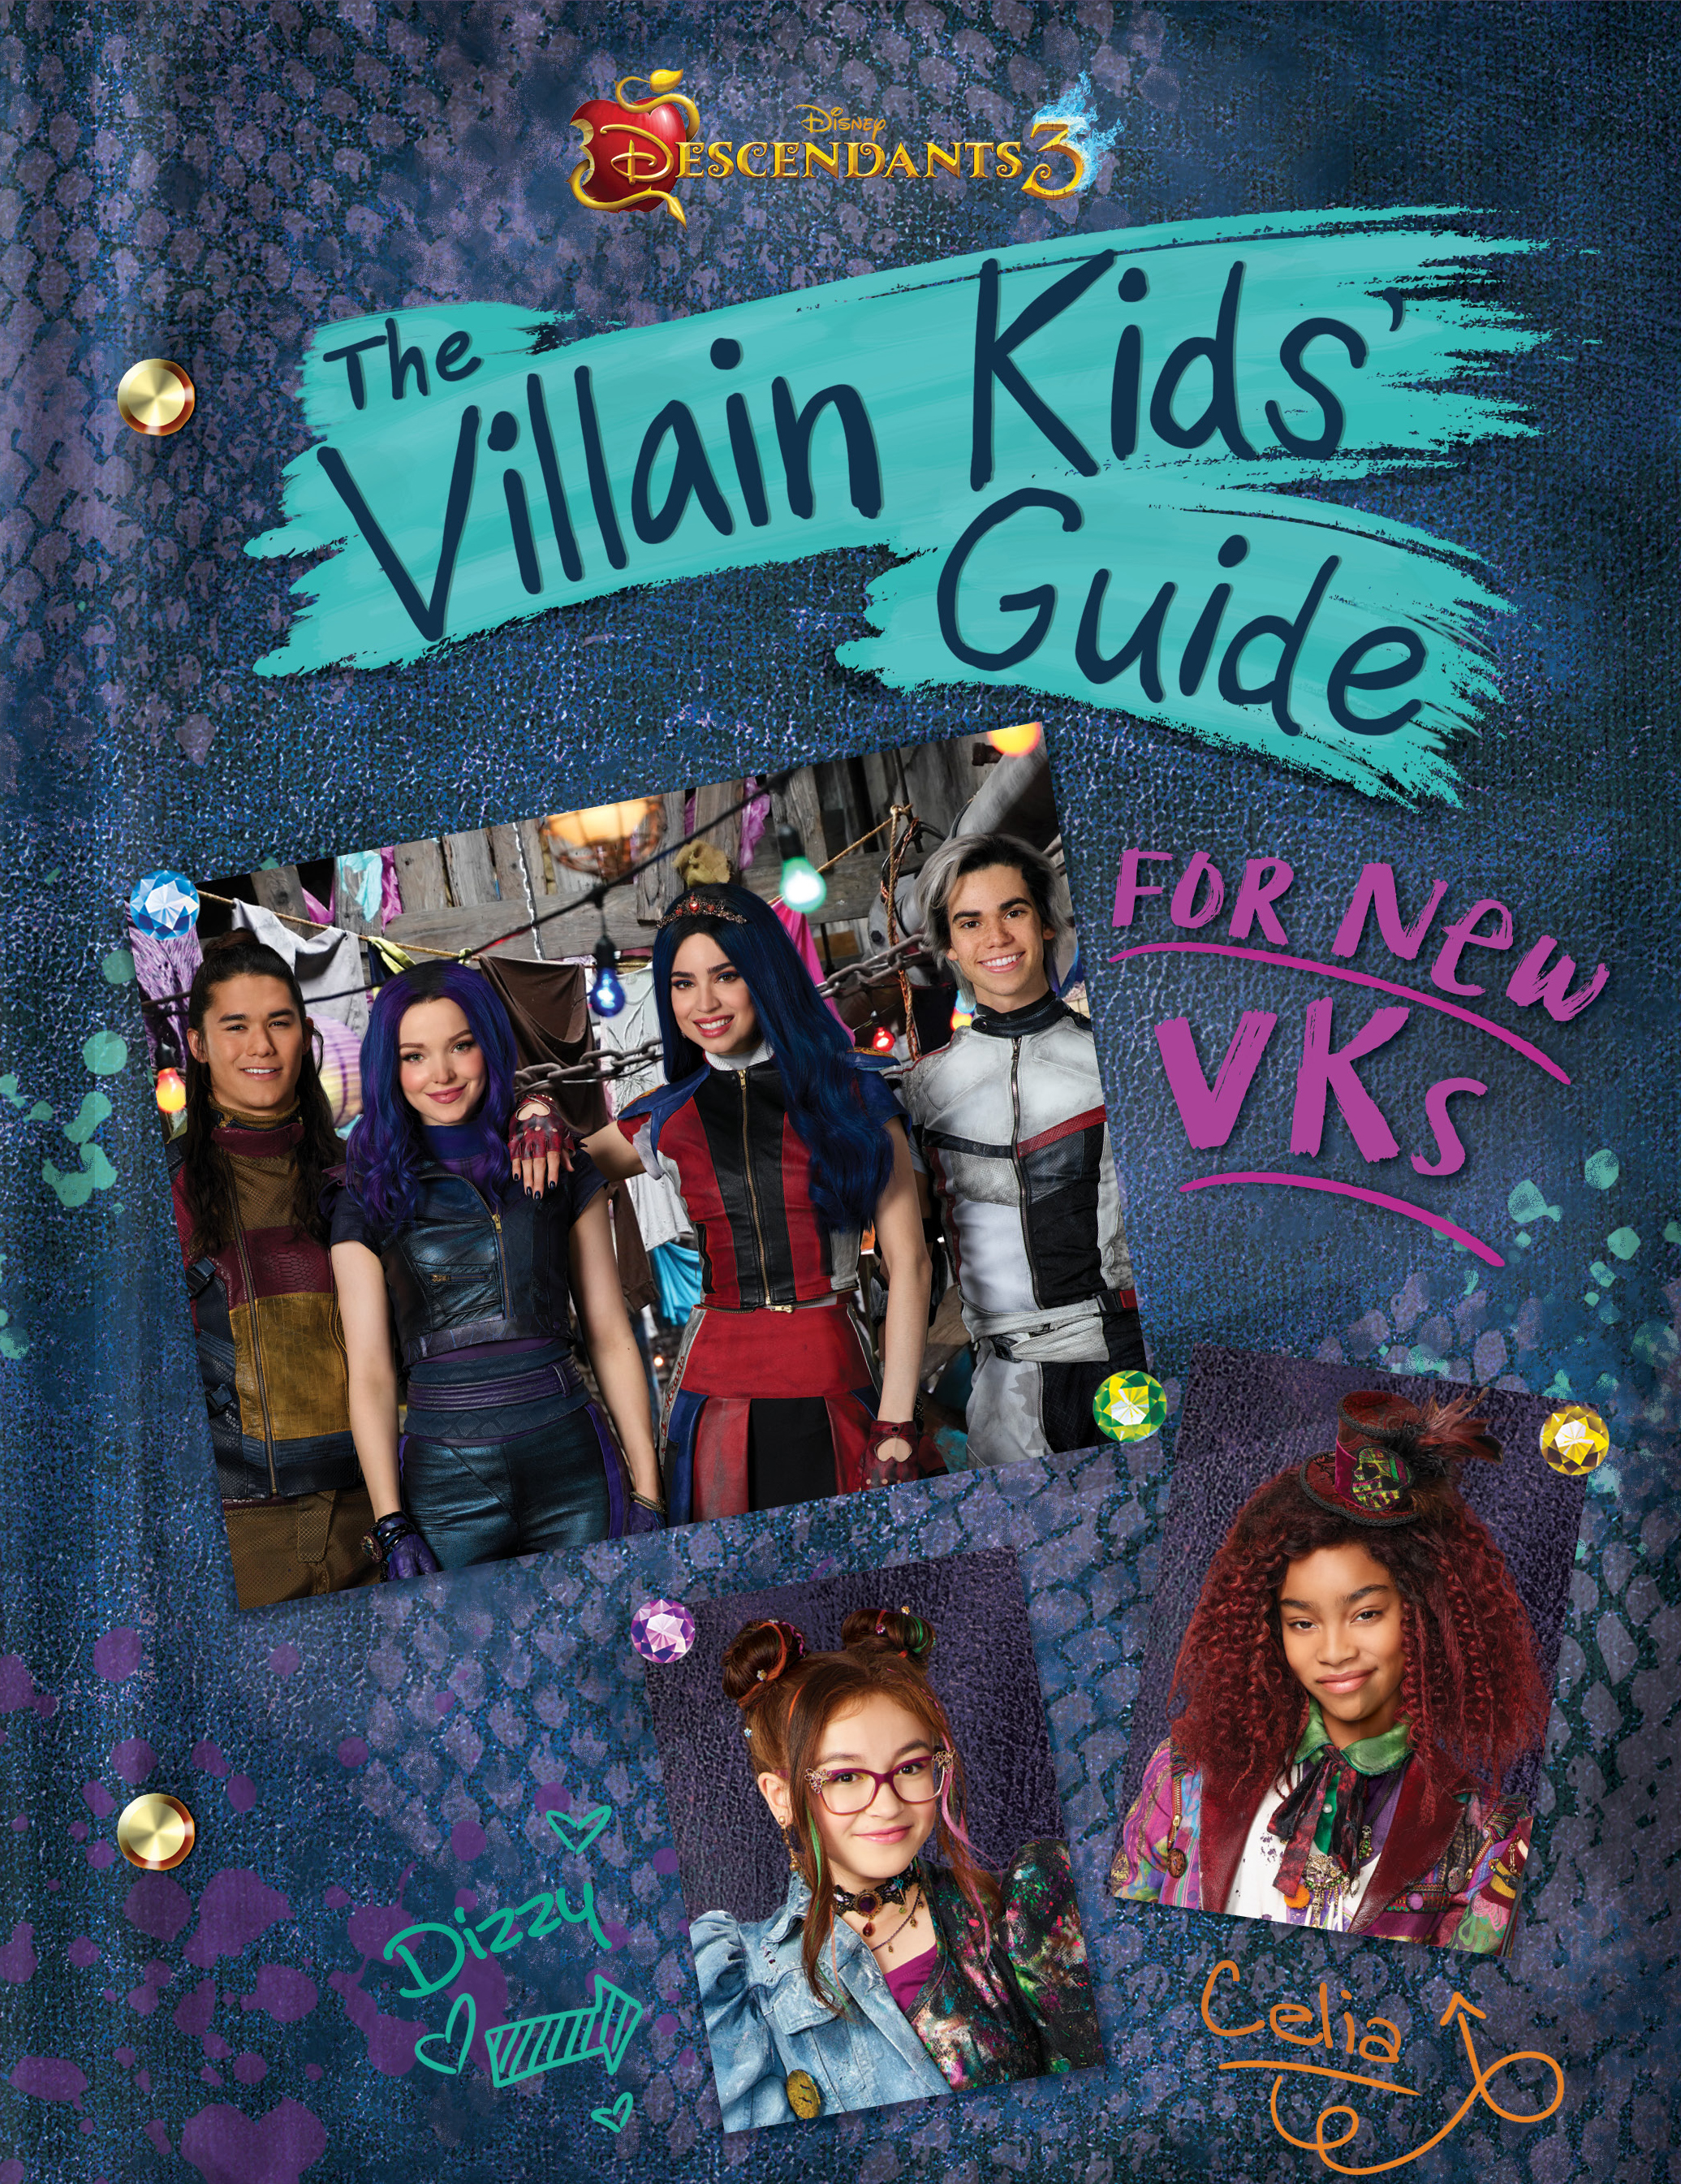 Group　Books　The　Disney,　Guide　Villain　by　Descendants　for　VKs　New　Descendants,　3:　Book　Disney　Kids'　Disney　Channel